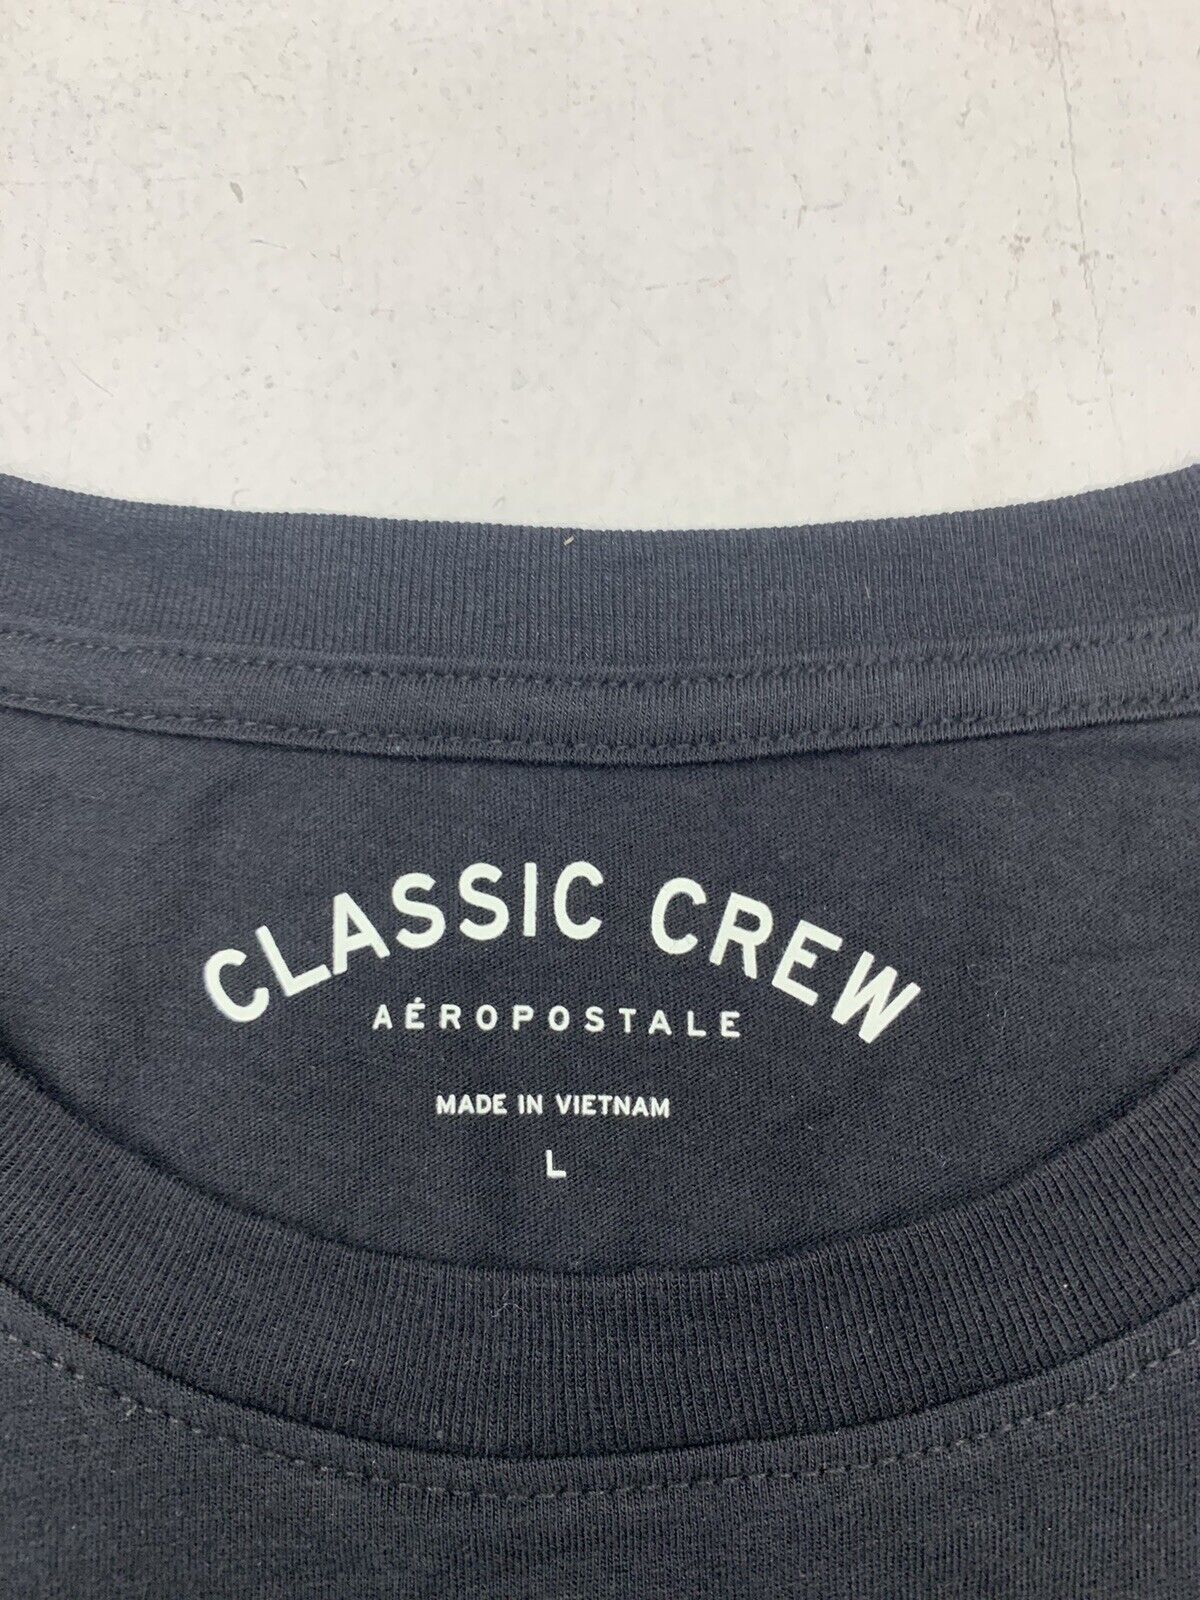 Classic Crew - Black